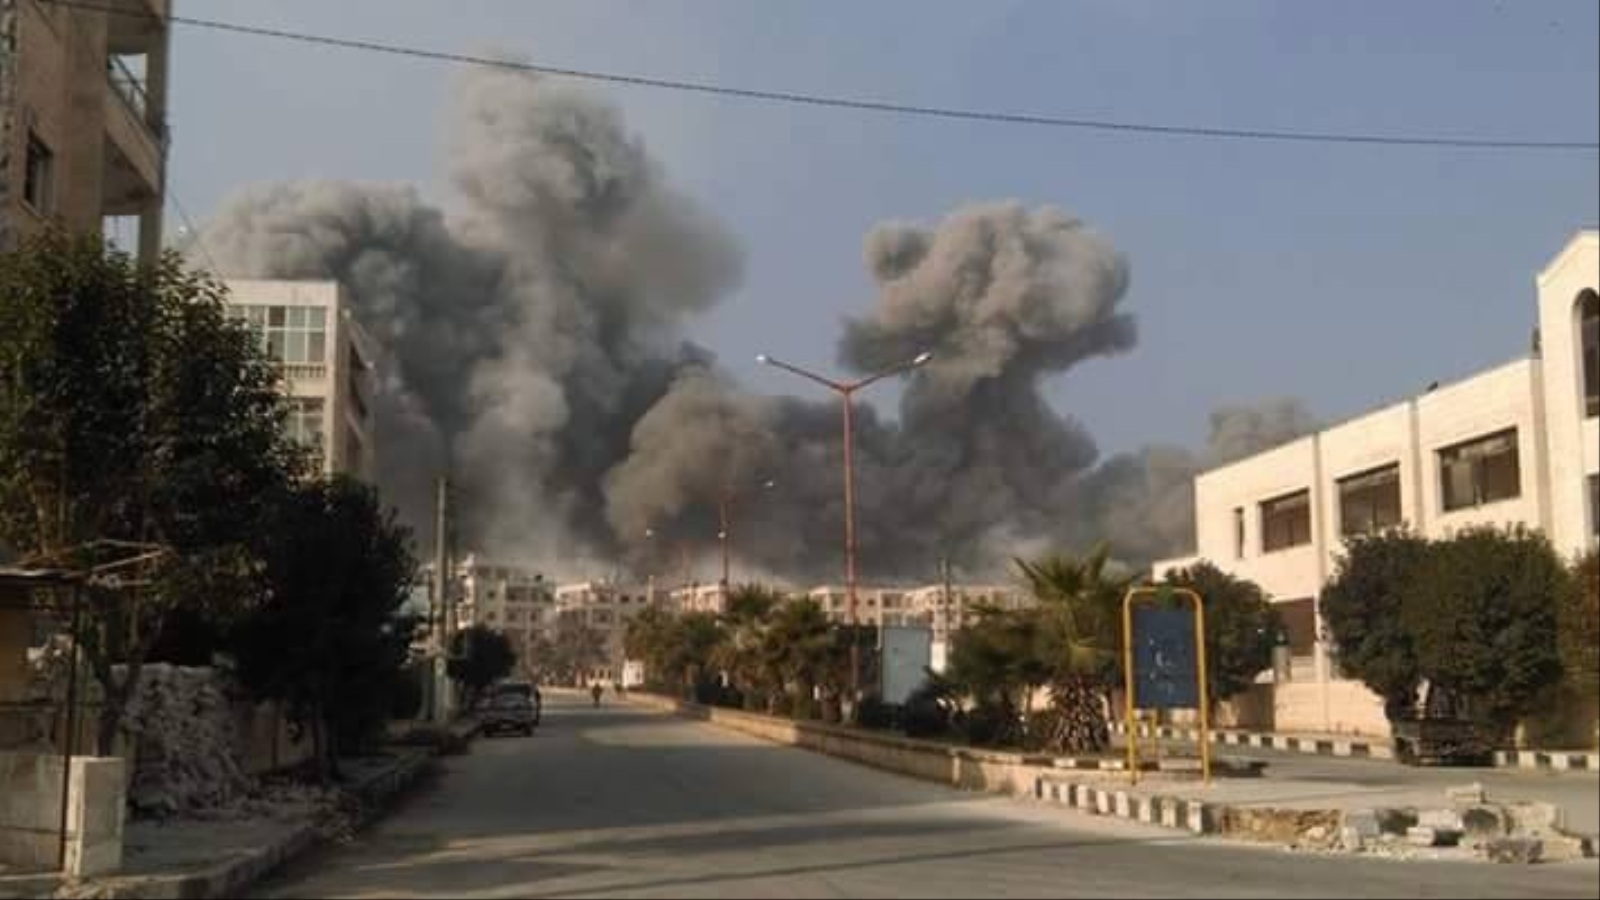 ‪مدينة إدلب تعرضت أمس لقصف روسي أوقع عشرات القتلى والجرحى‬ مدينة إدلب تعرضت أمس لقصف روسي أوقع عشرات القتلى والجرحى (الجزيرة)